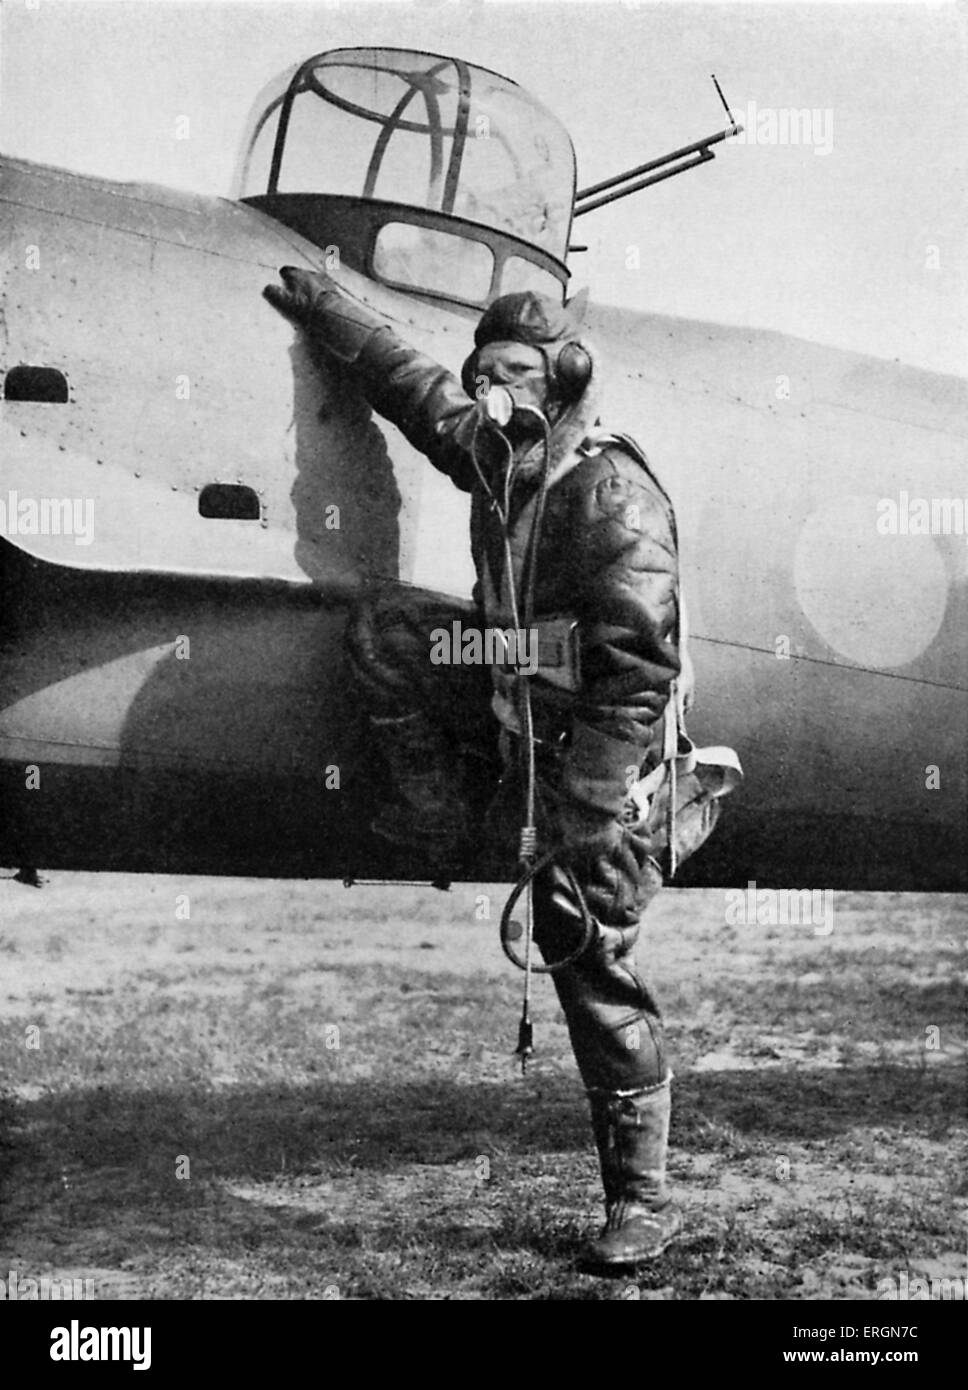 WW2 - Ausrüstung eines britischen Piloten. RAF Piloten in voller Montur neben seinem Flugzeug. Bildunterschrift lautet: für Luftkampf ausgestattet: Sauerstoff, Stockfoto